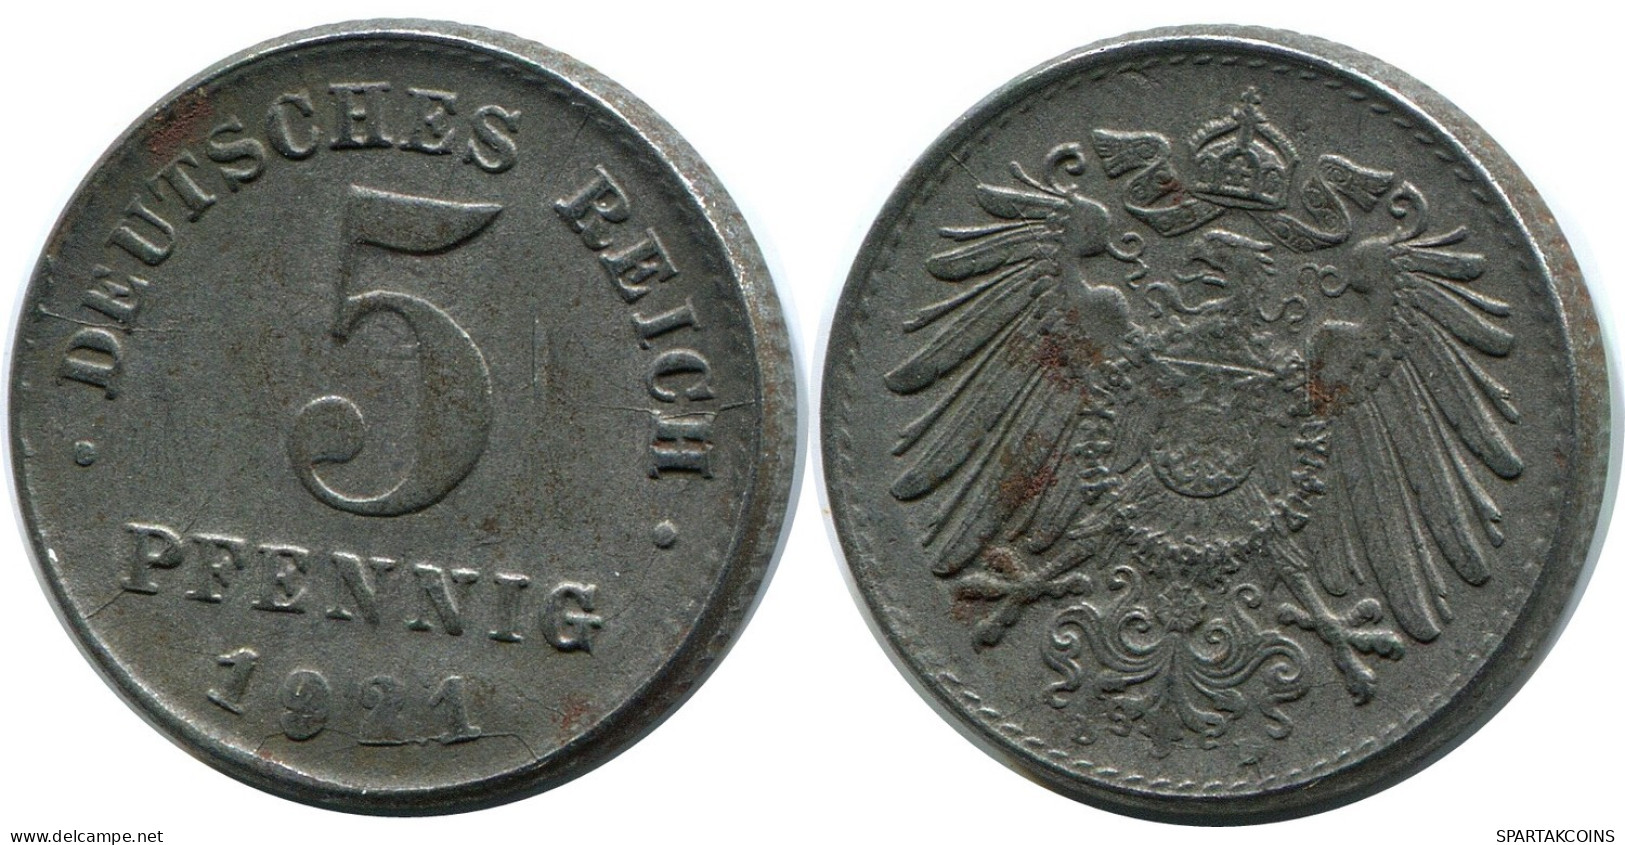 5 PFENNIG 1921 D GERMANY Coin #DB866.U.A - 5 Rentenpfennig & 5 Reichspfennig